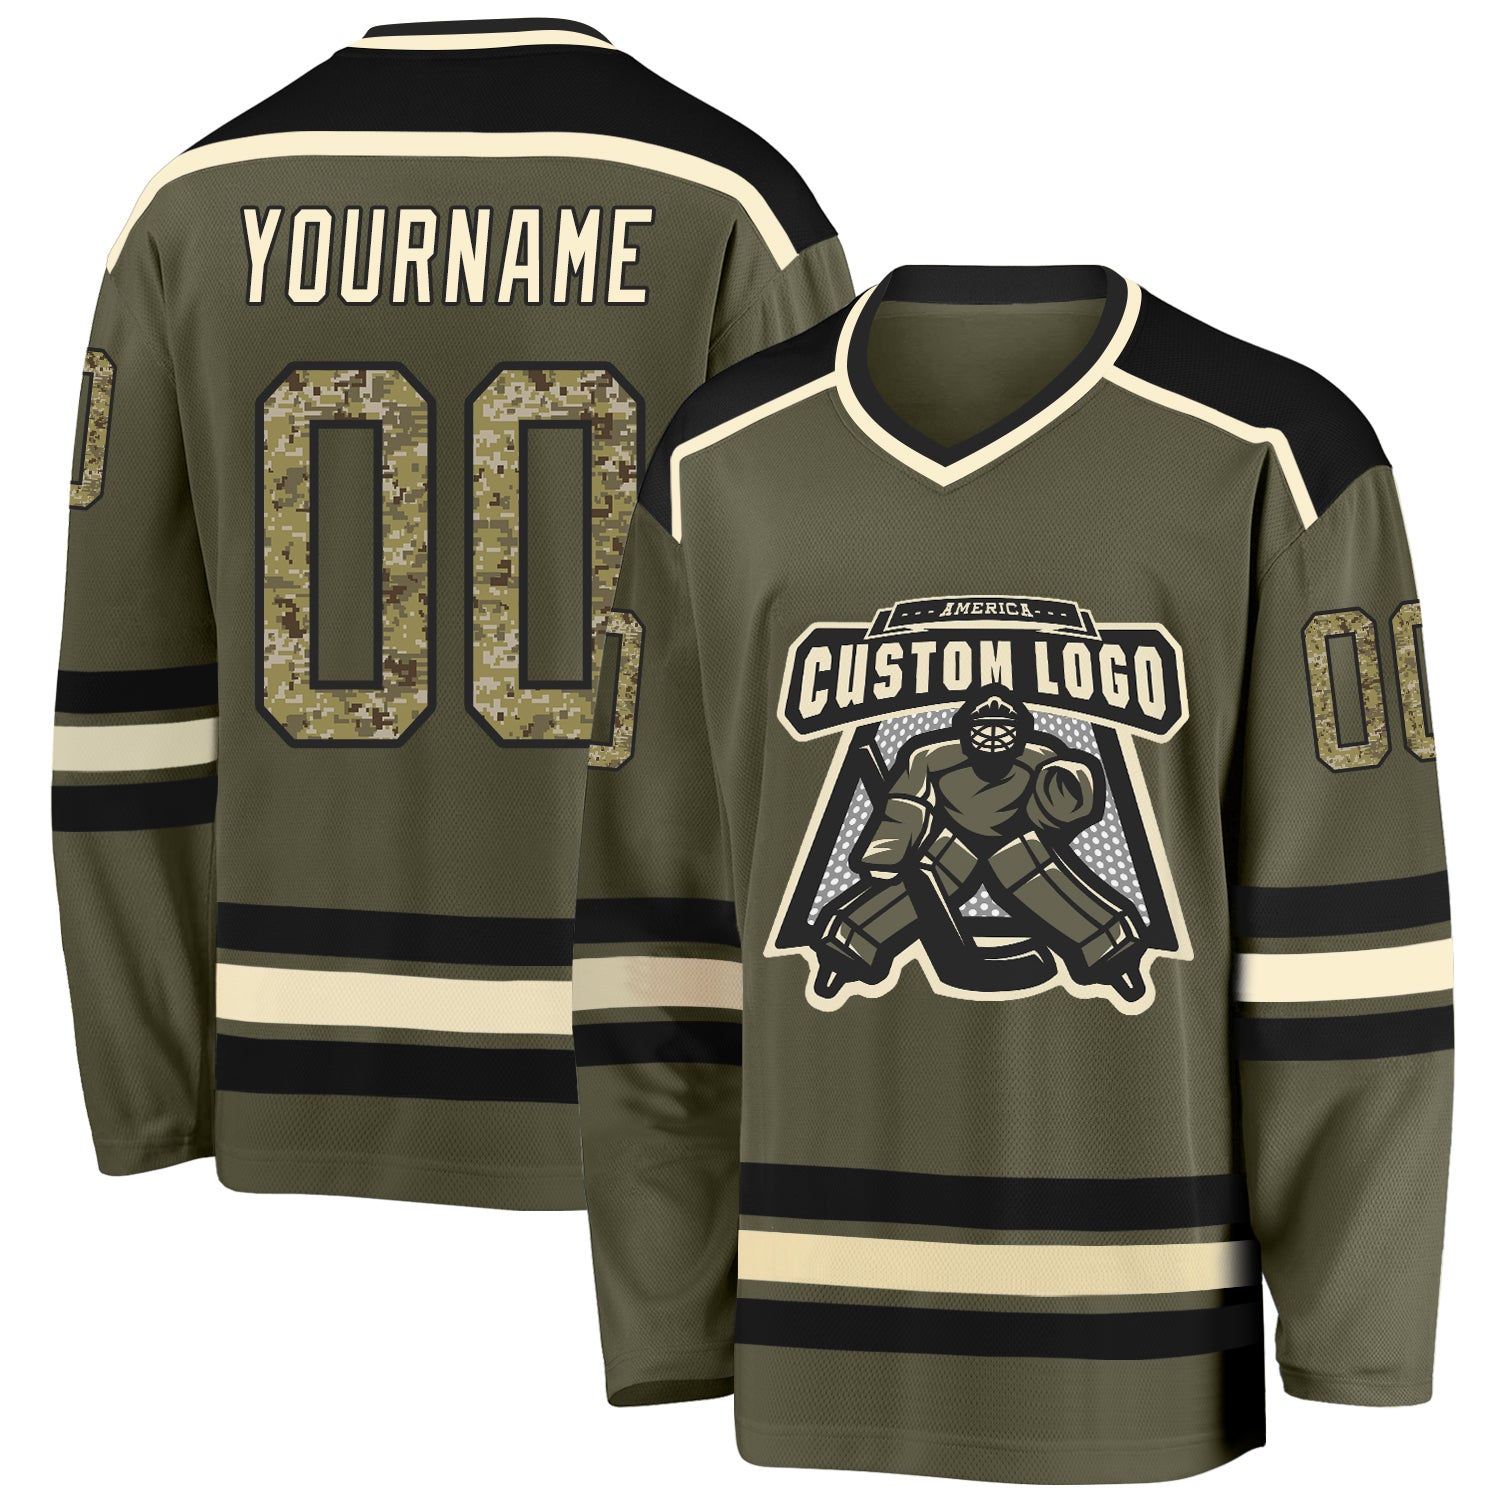 NHL Pittsburgh Penguins Logo Baseball Jersey Shirt Custom Name For